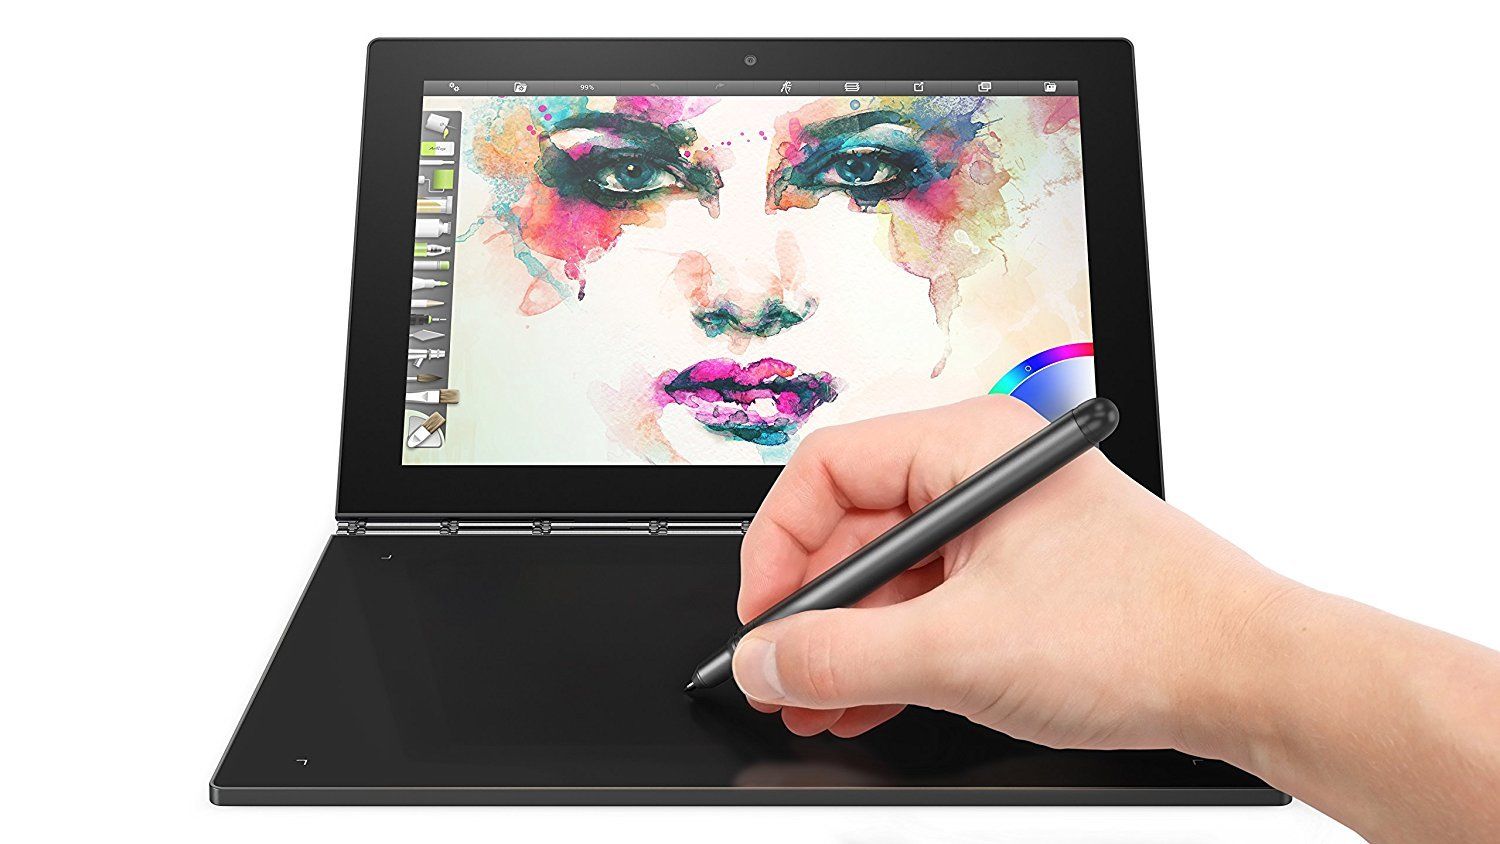 Lenovo Yoga Book full-HD 10.1″ 2-in-1 laptop tablet for $220